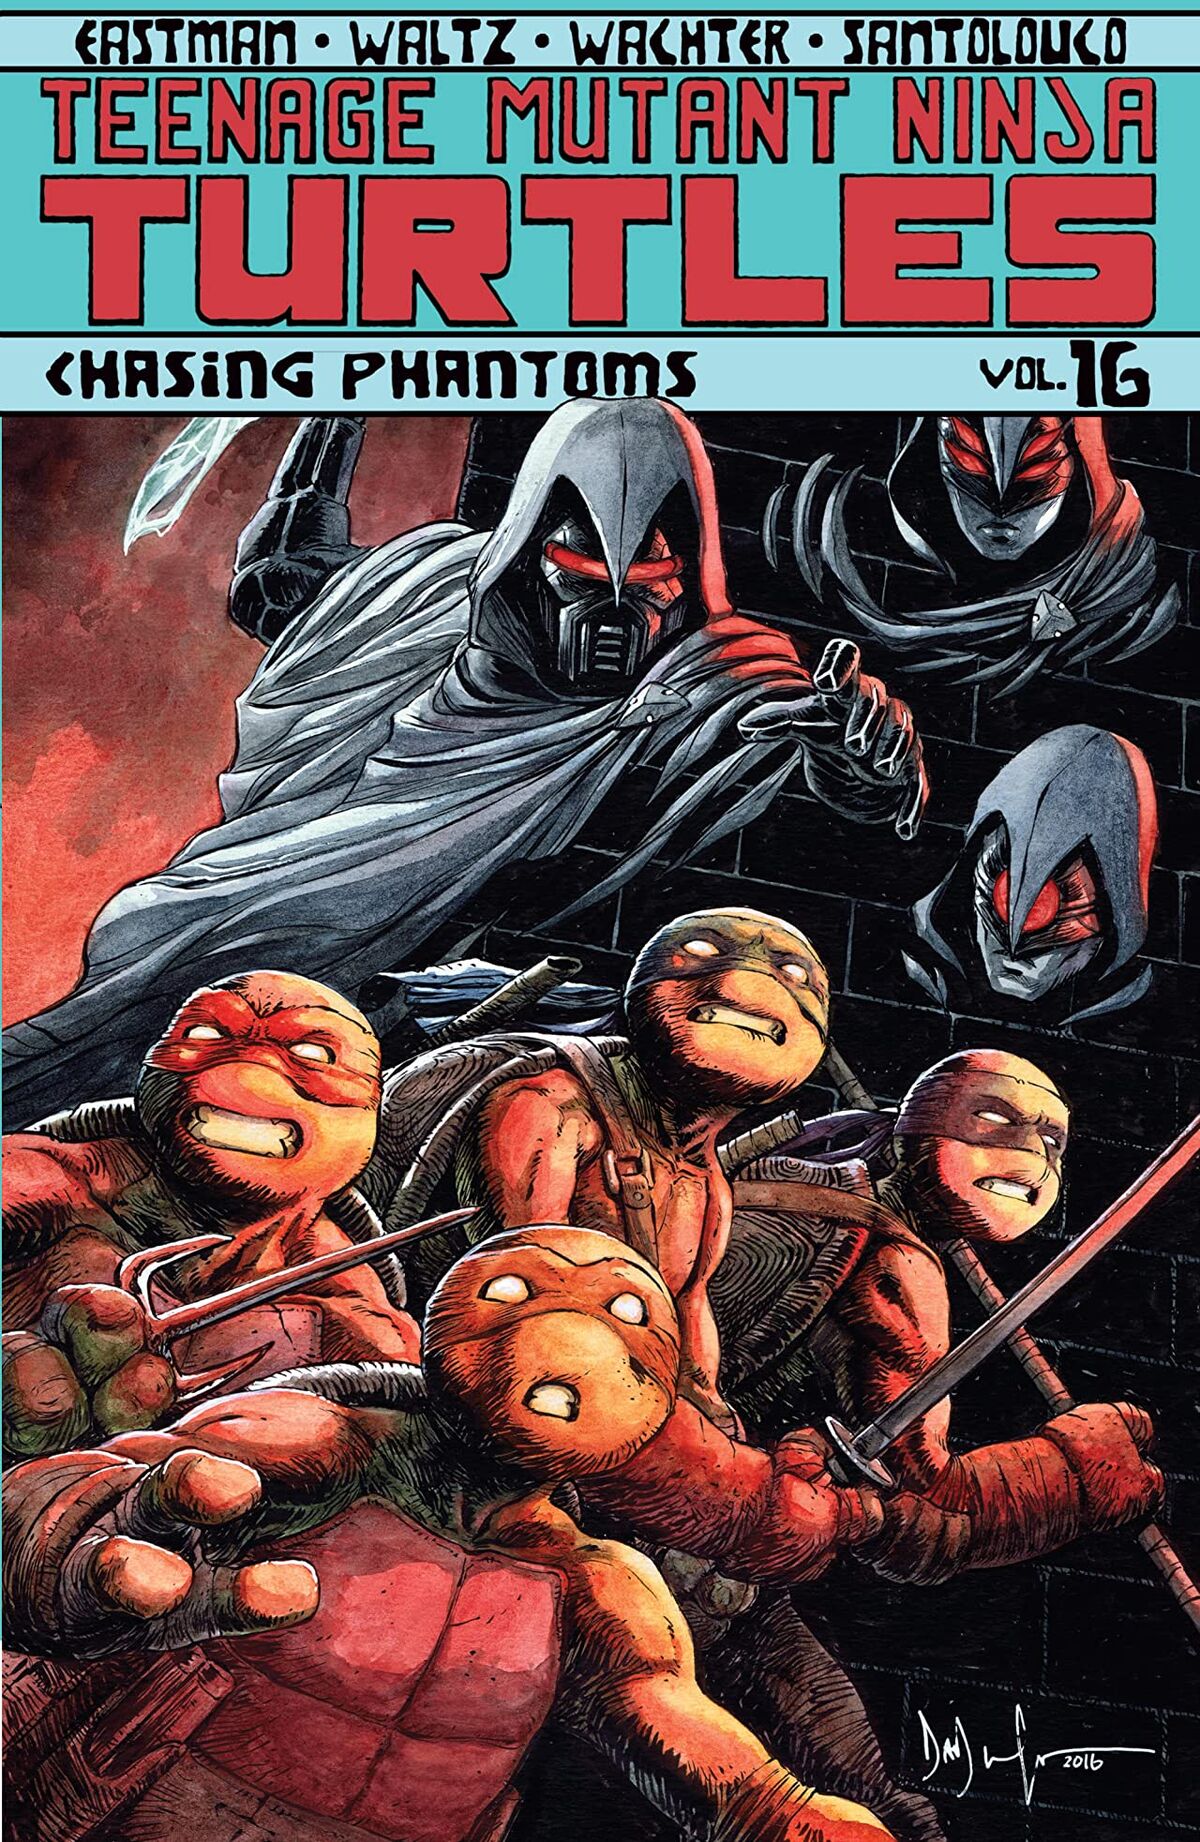 Teenage Mutant Ninja Turtles Volume 16 Chasing Phantoms Tmntpedia Fandom 